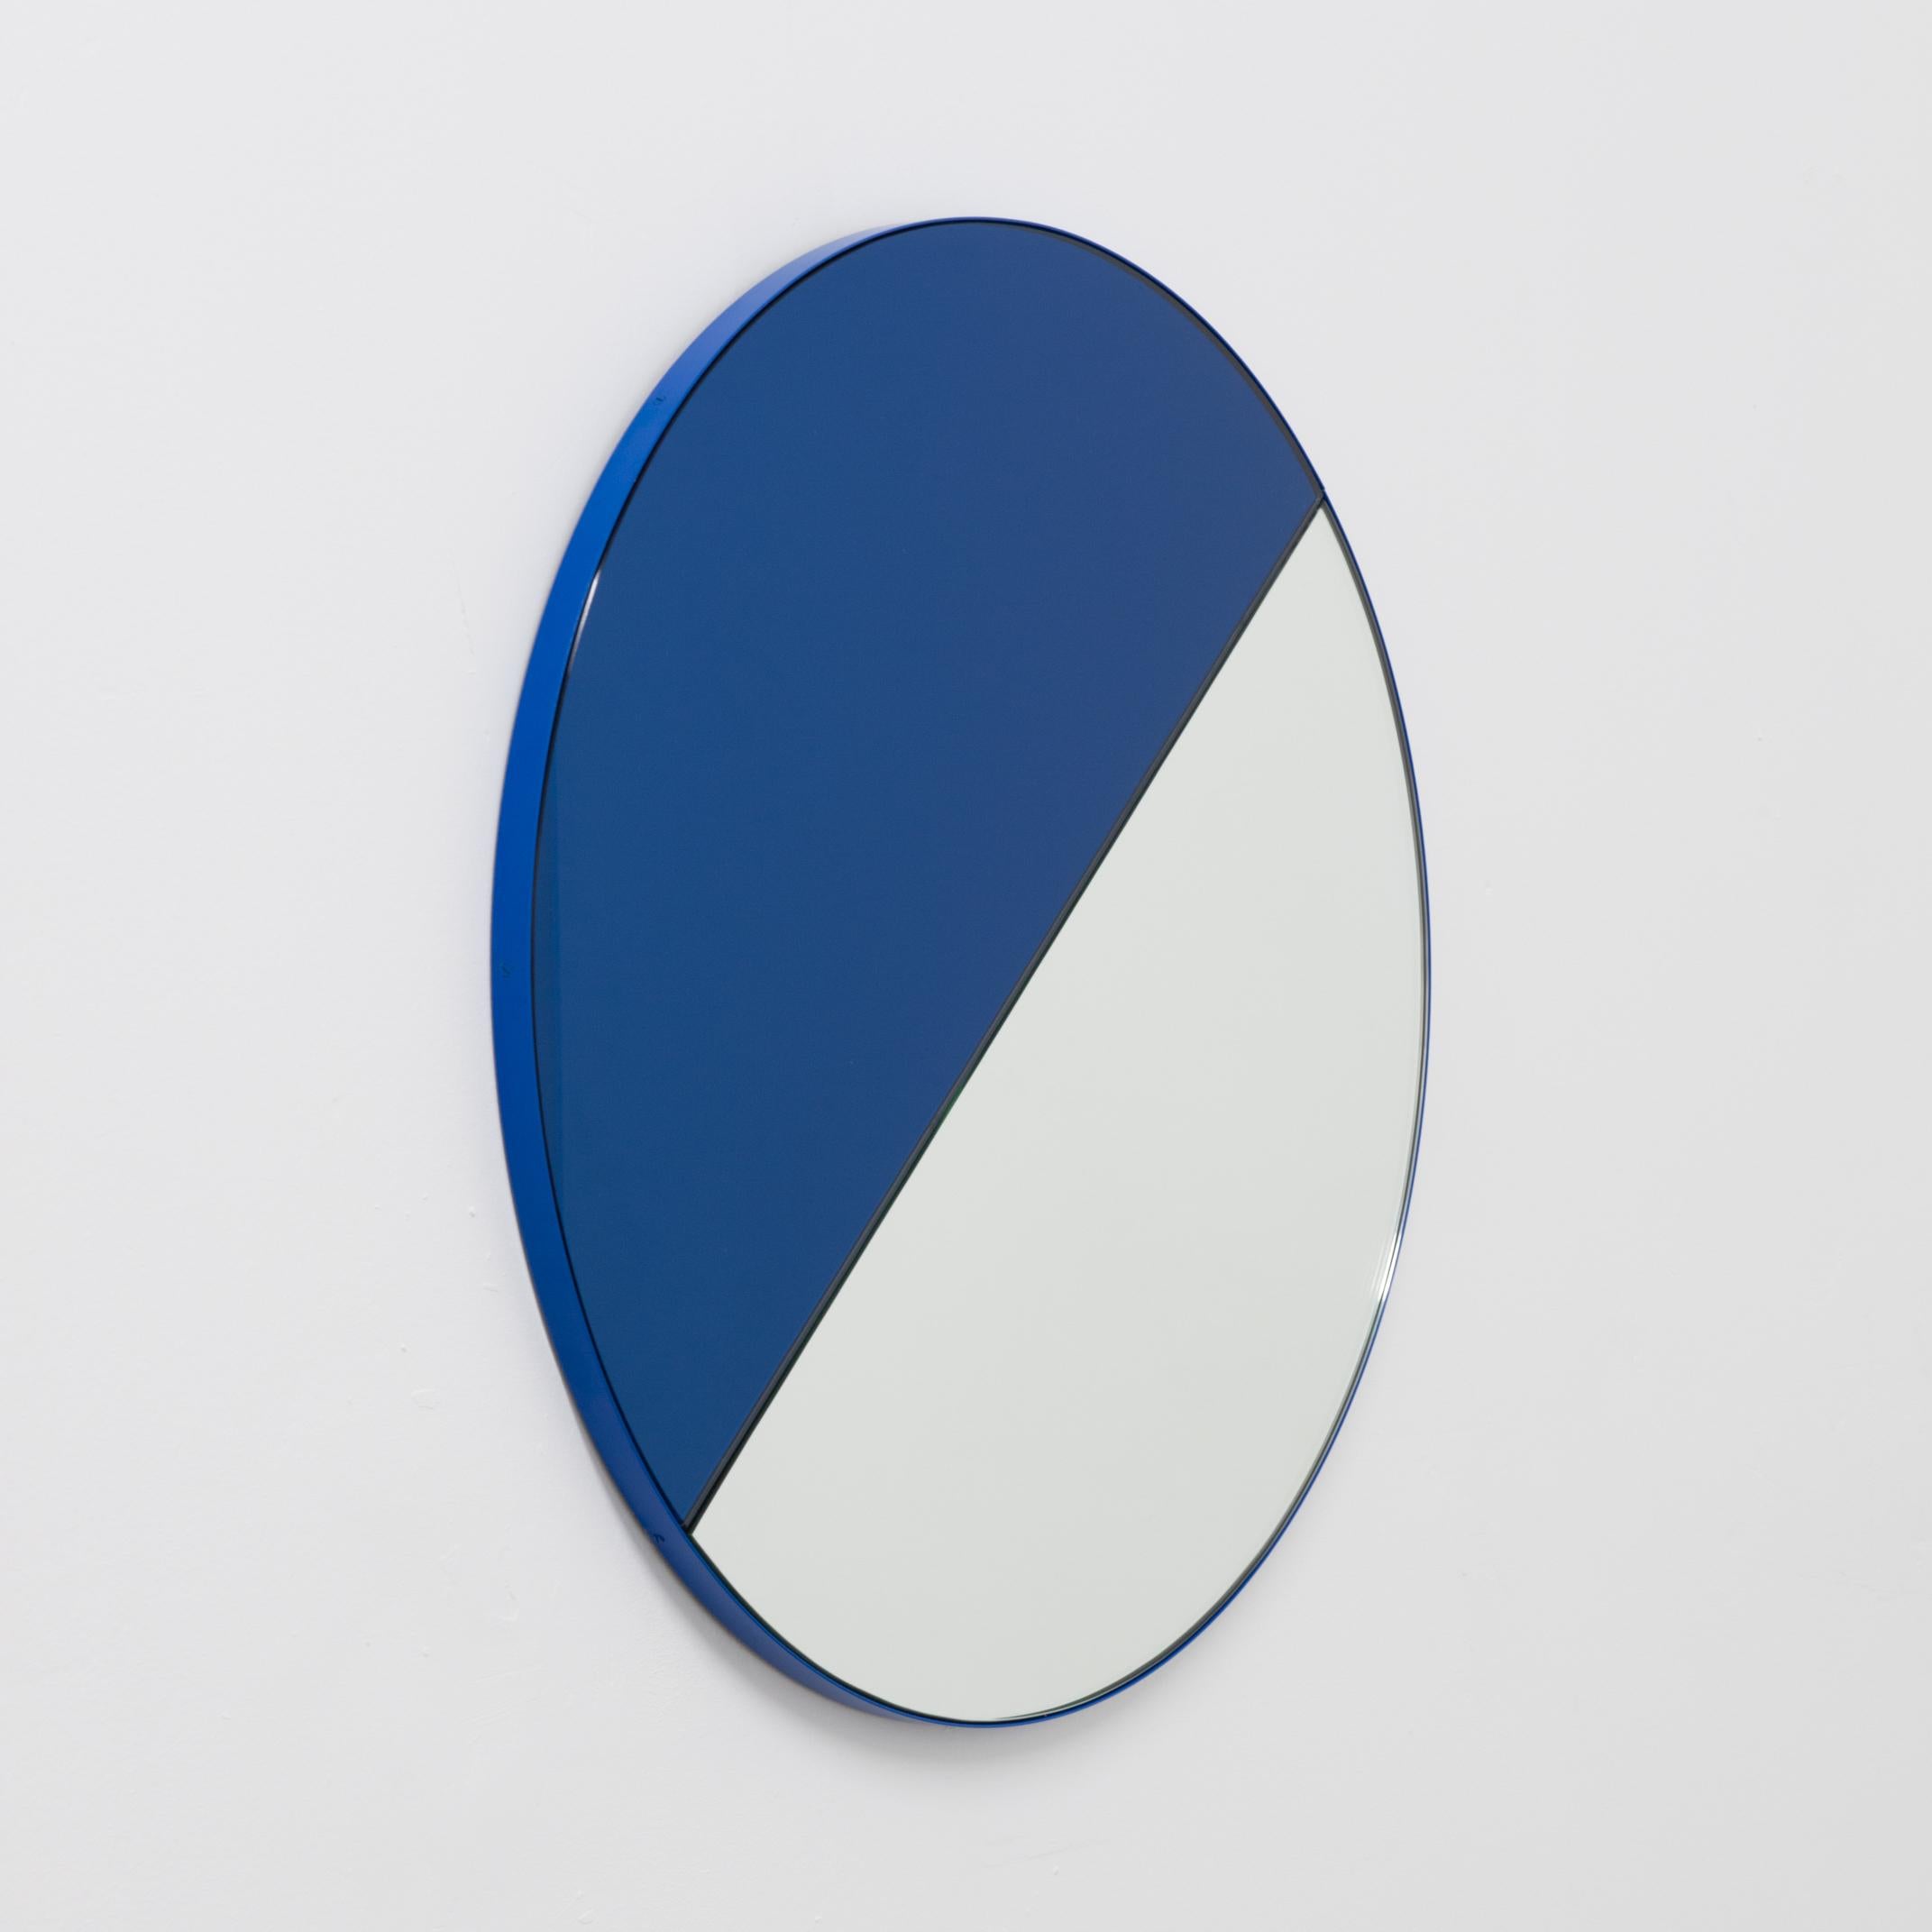 Aluminium Miroir rond Orbis Dualis bleu et argenté avec cadre bleu, en stock en vente